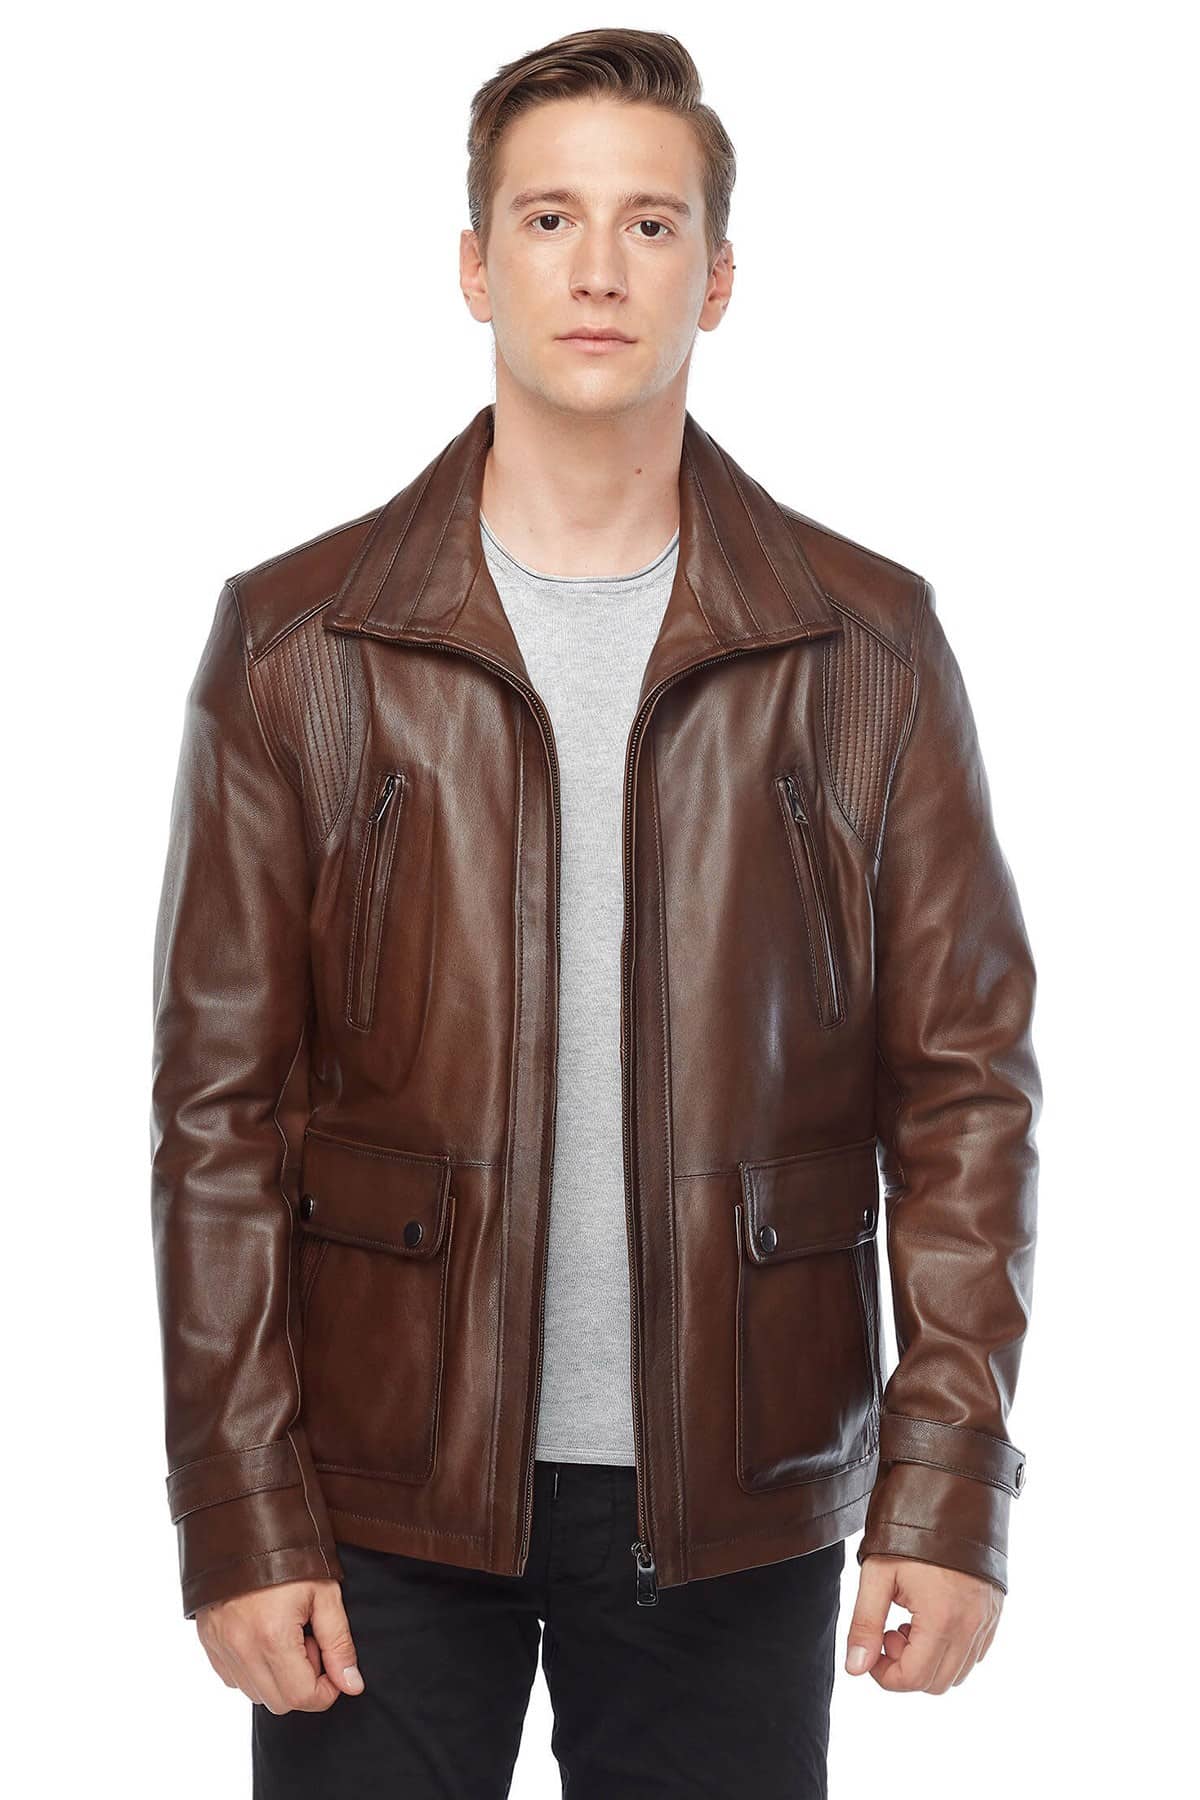 Benado Brown Genuine Leather Coat2